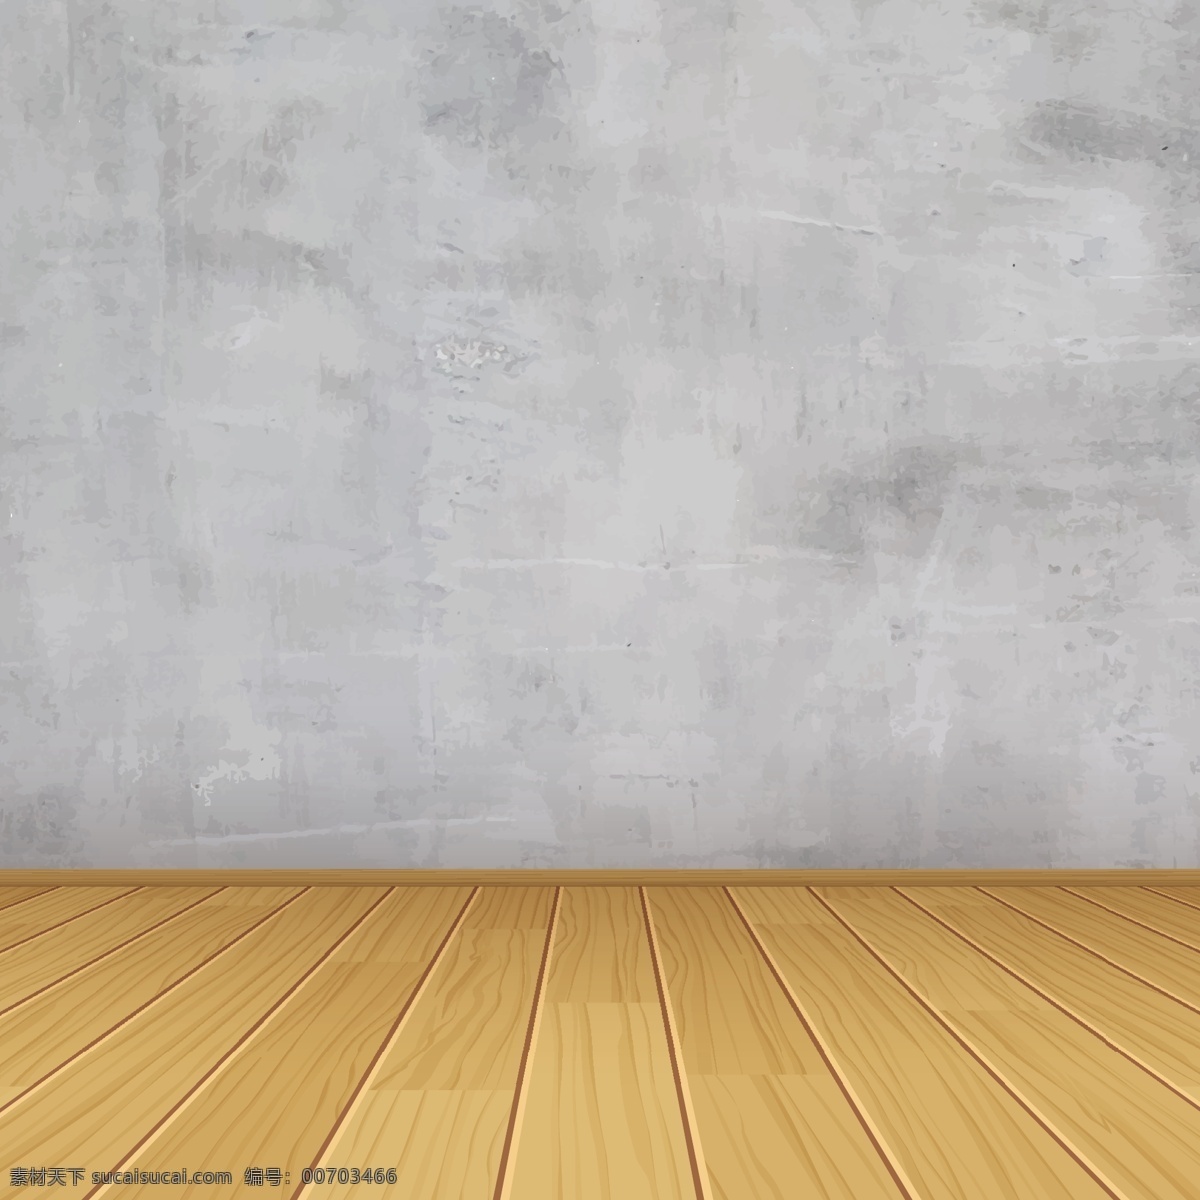 木纹背景 木质纹理 木板材质背景 精美 木板 展台设计 木头 原木 简约 木色 灰色